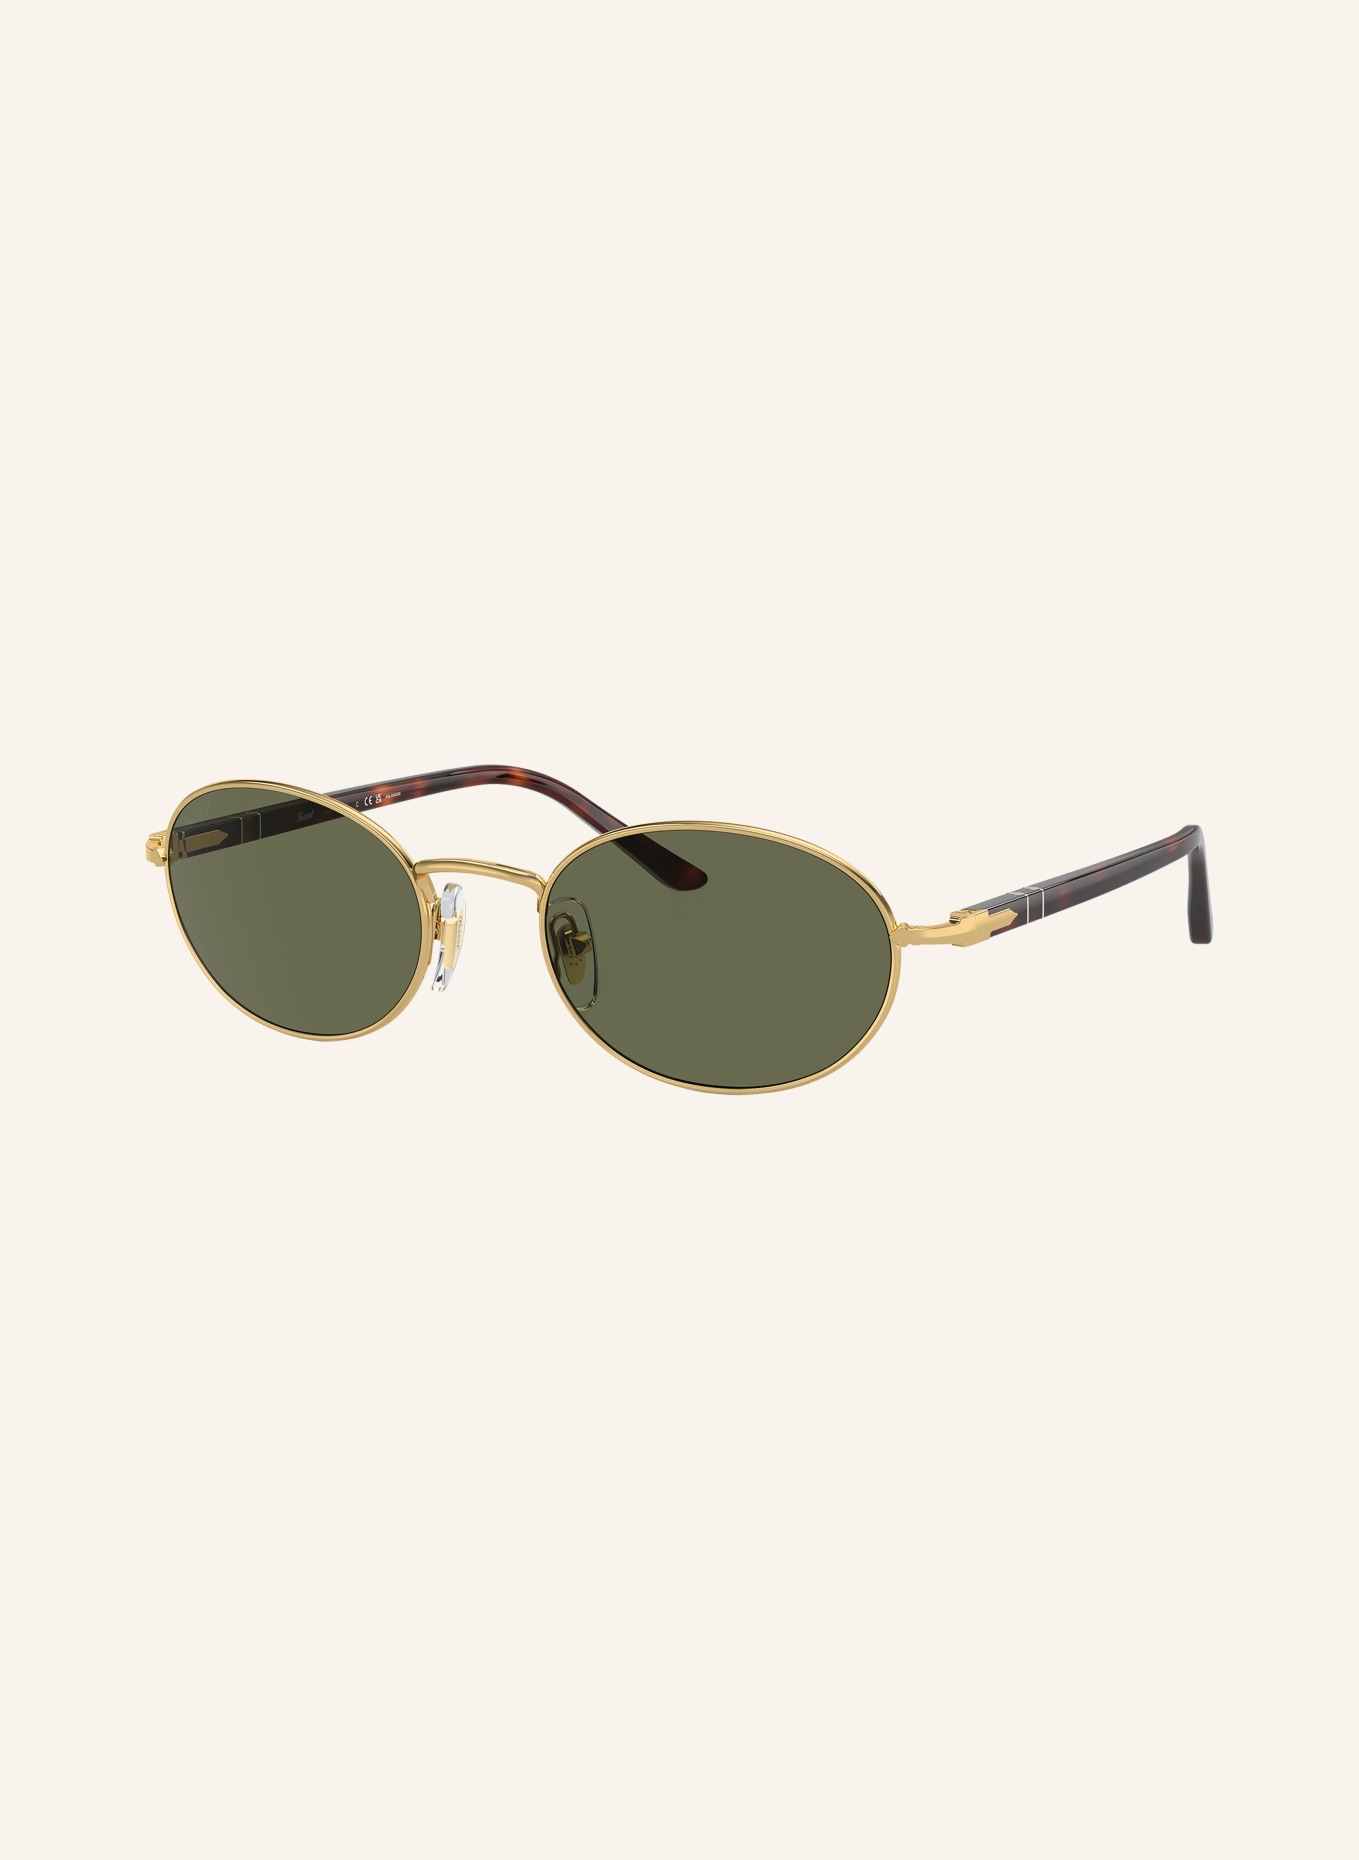 Persol Sunglasses PO1018S, Color: 515/58 - GOLD/GREEN POLARIZED (Image 1)